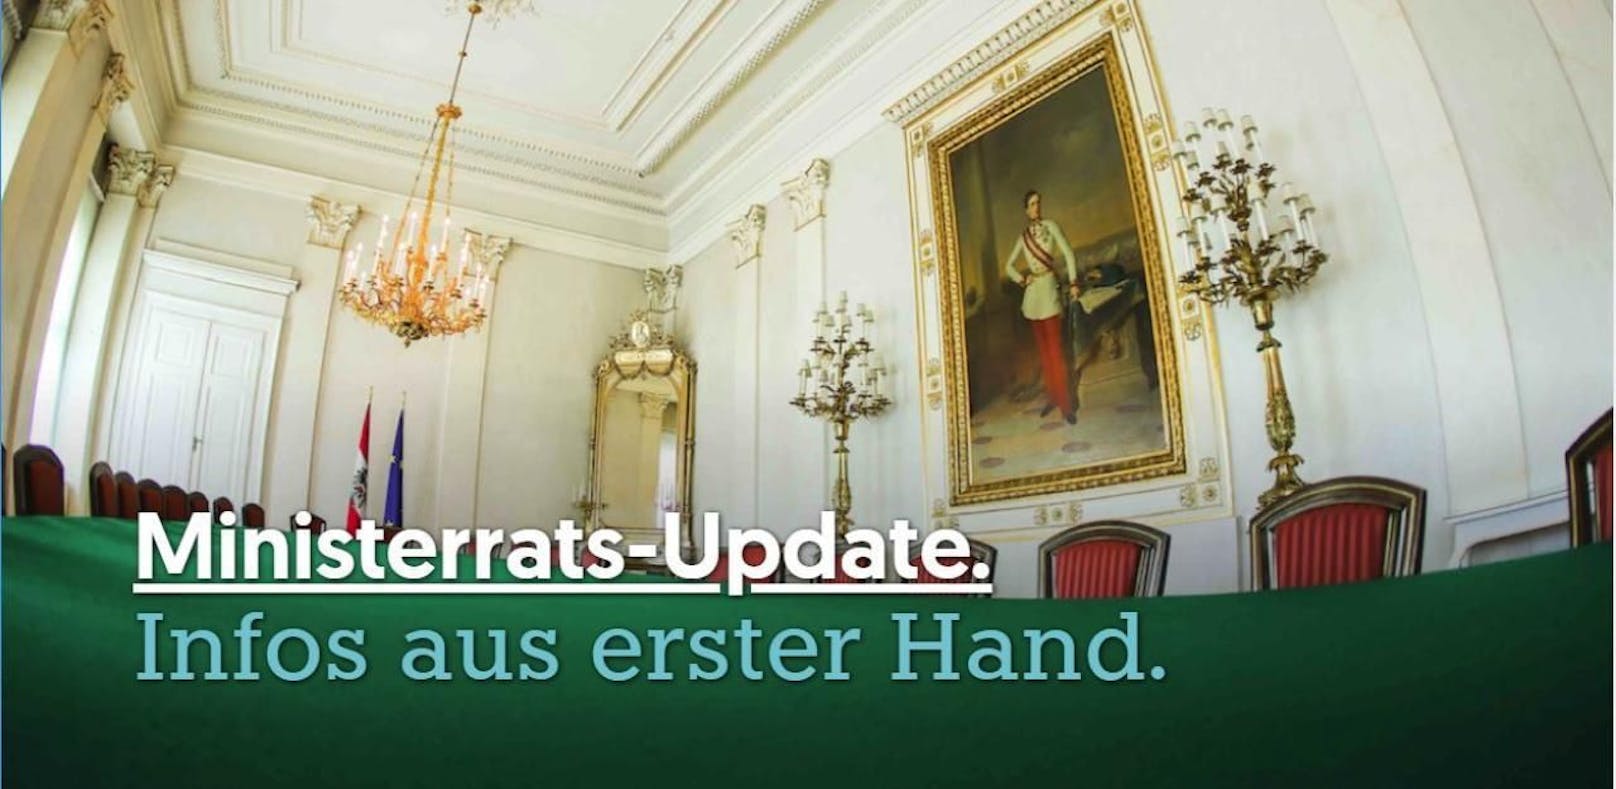 Kanzler Sebastian Kurz (ÖVP) lässt Fans künftig per E-Mail über Ministerrats-Updates informieren.